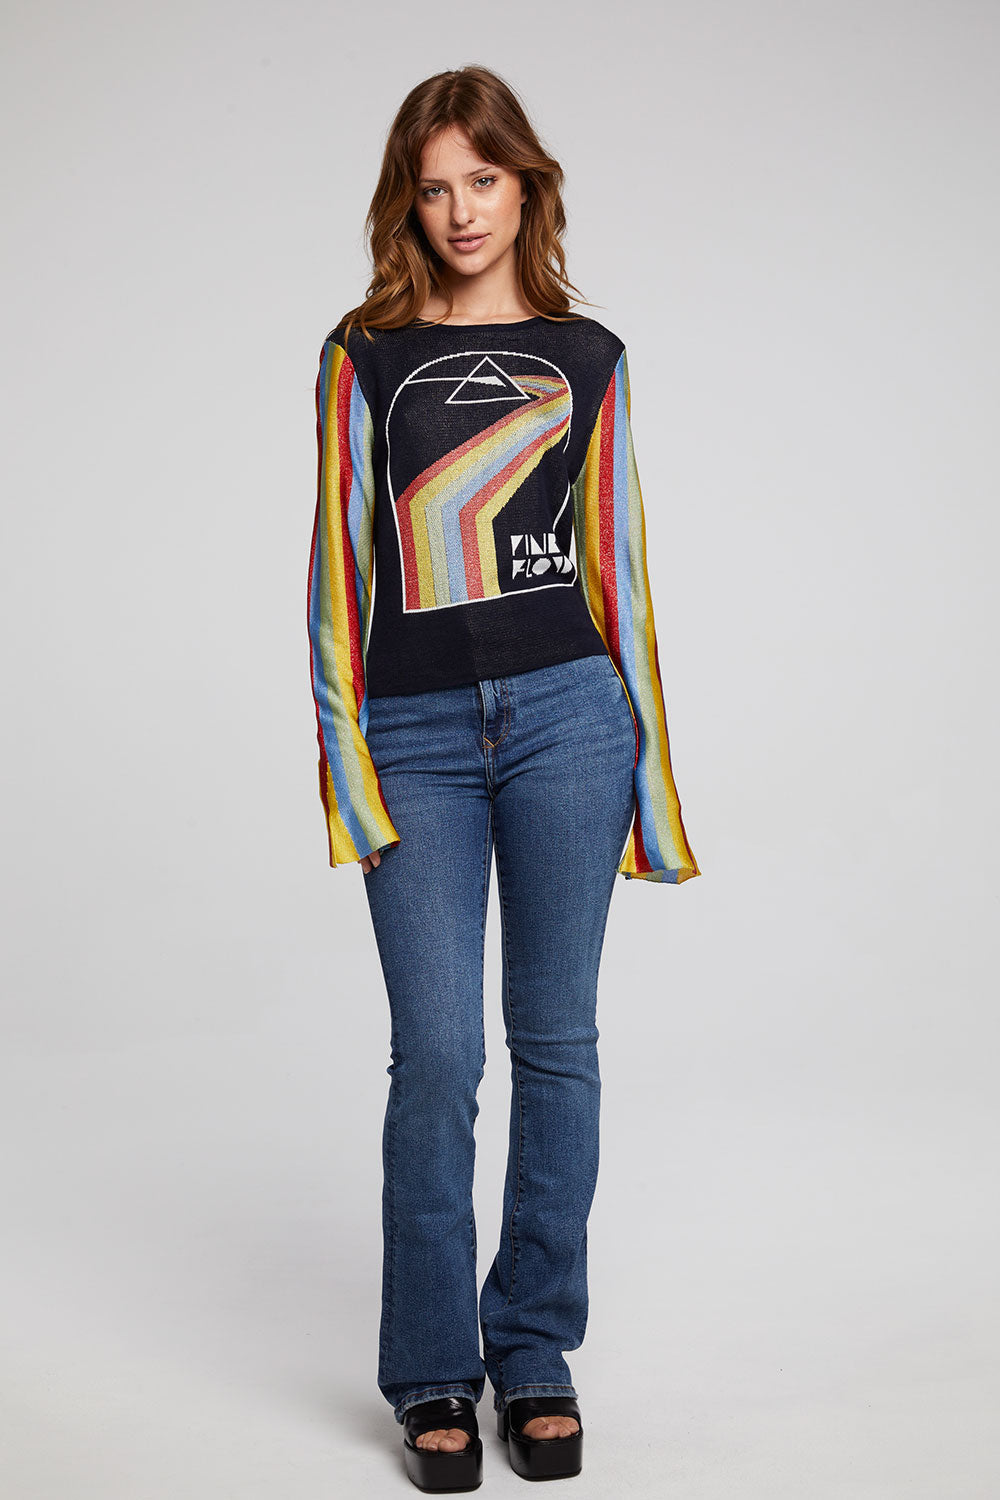 Pink Floyd Prism Sweater - La De Da